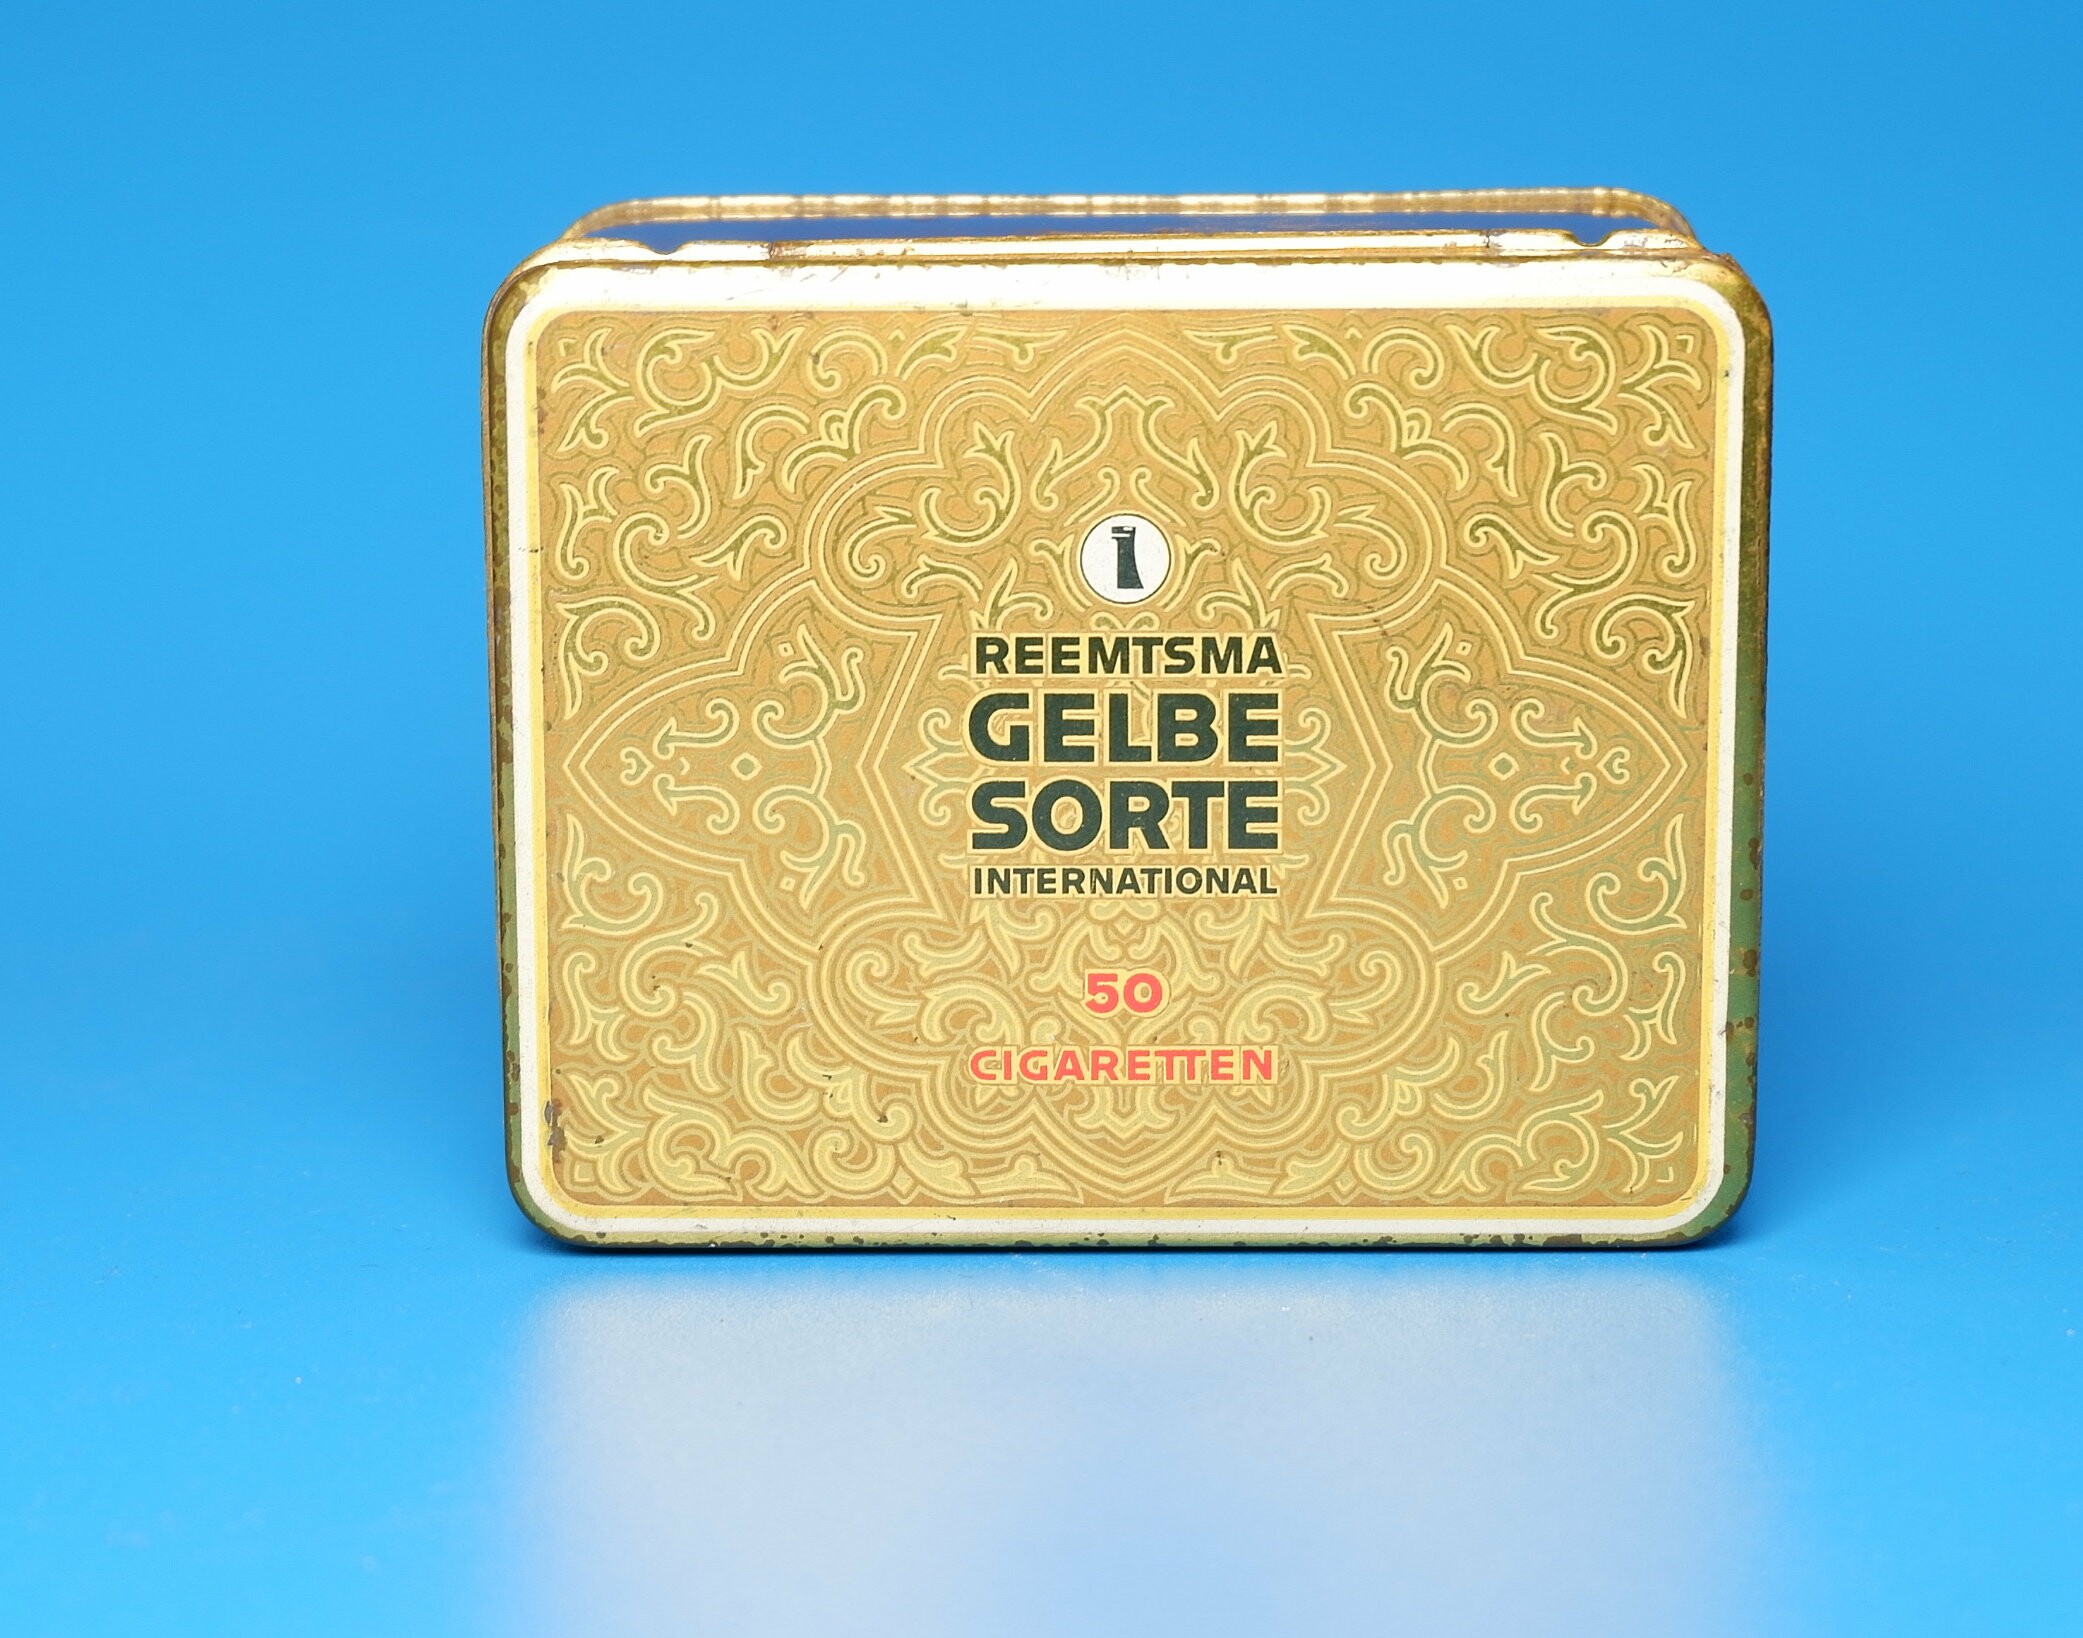 Zigarettenmarke	"Reemtsma Gelbe Sorte" - 50 Stückpackung (Volkskunde- und Freilichtmuseum Roscheider Hof CC0)